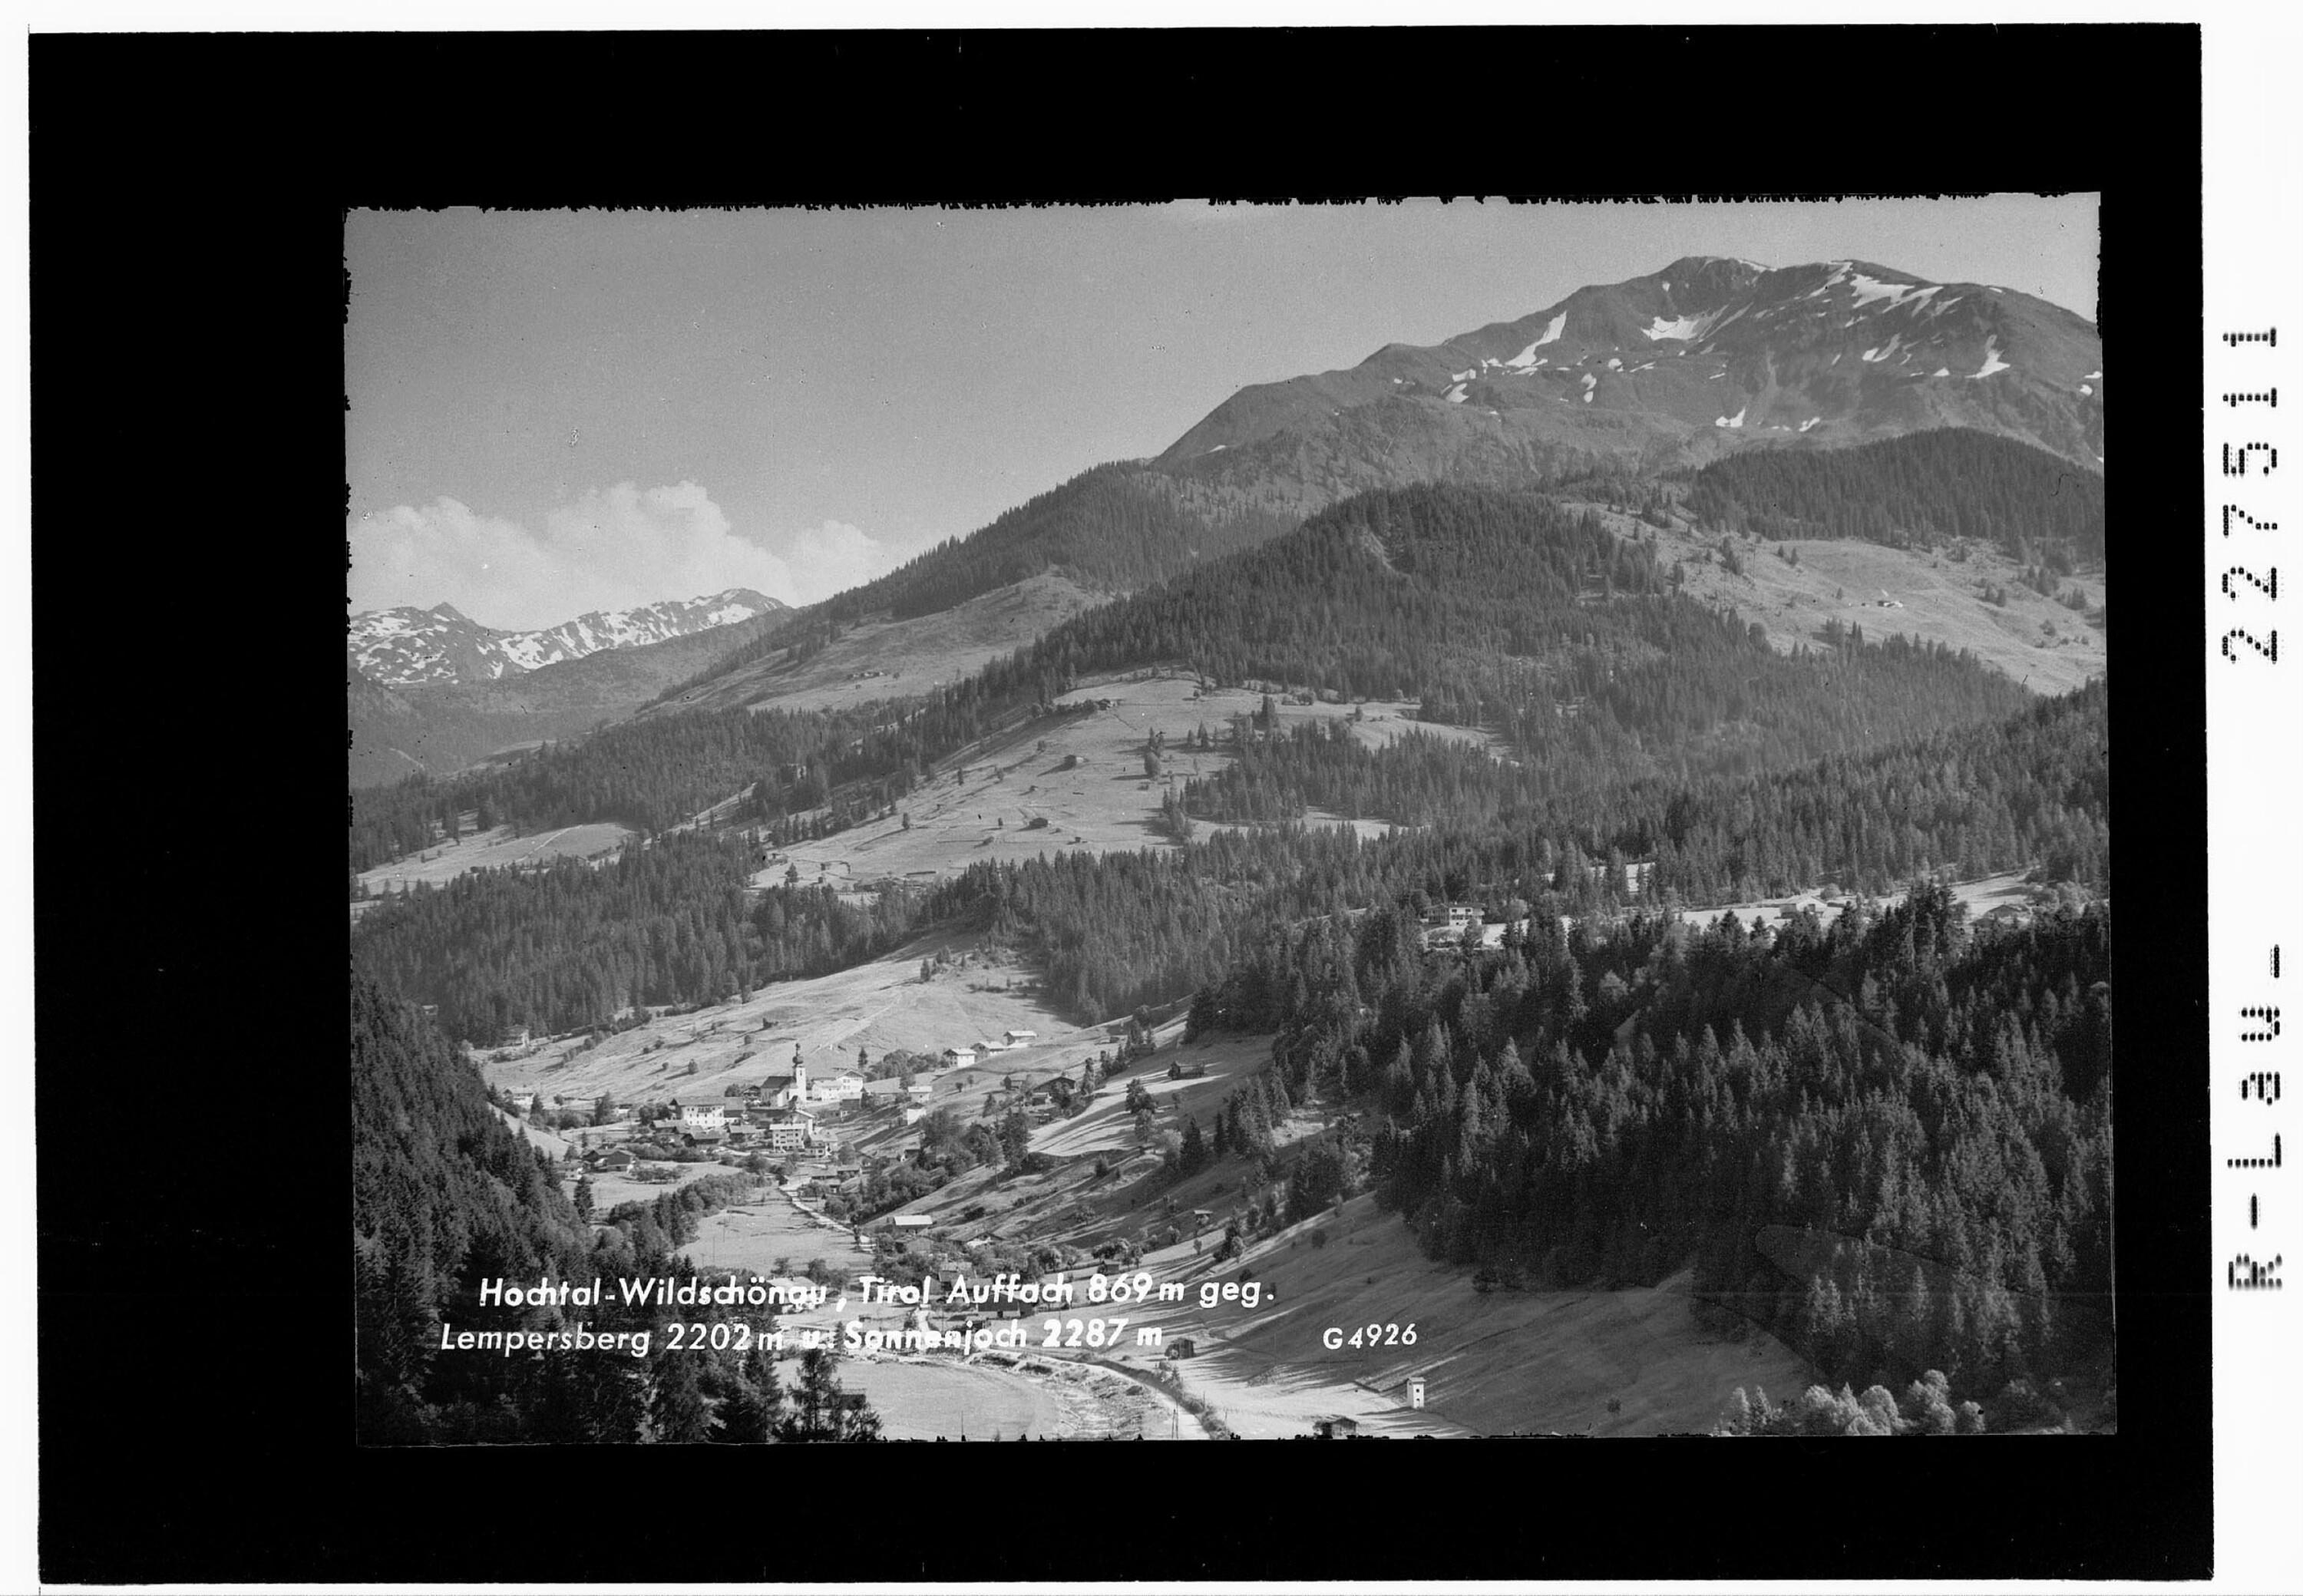 Hochtal Wildschönau / Tirol / Auffach 869 m gegen Lempersberg 2202 m und Sonnenjoch 2287 m></div>


    <hr>
    <div class=